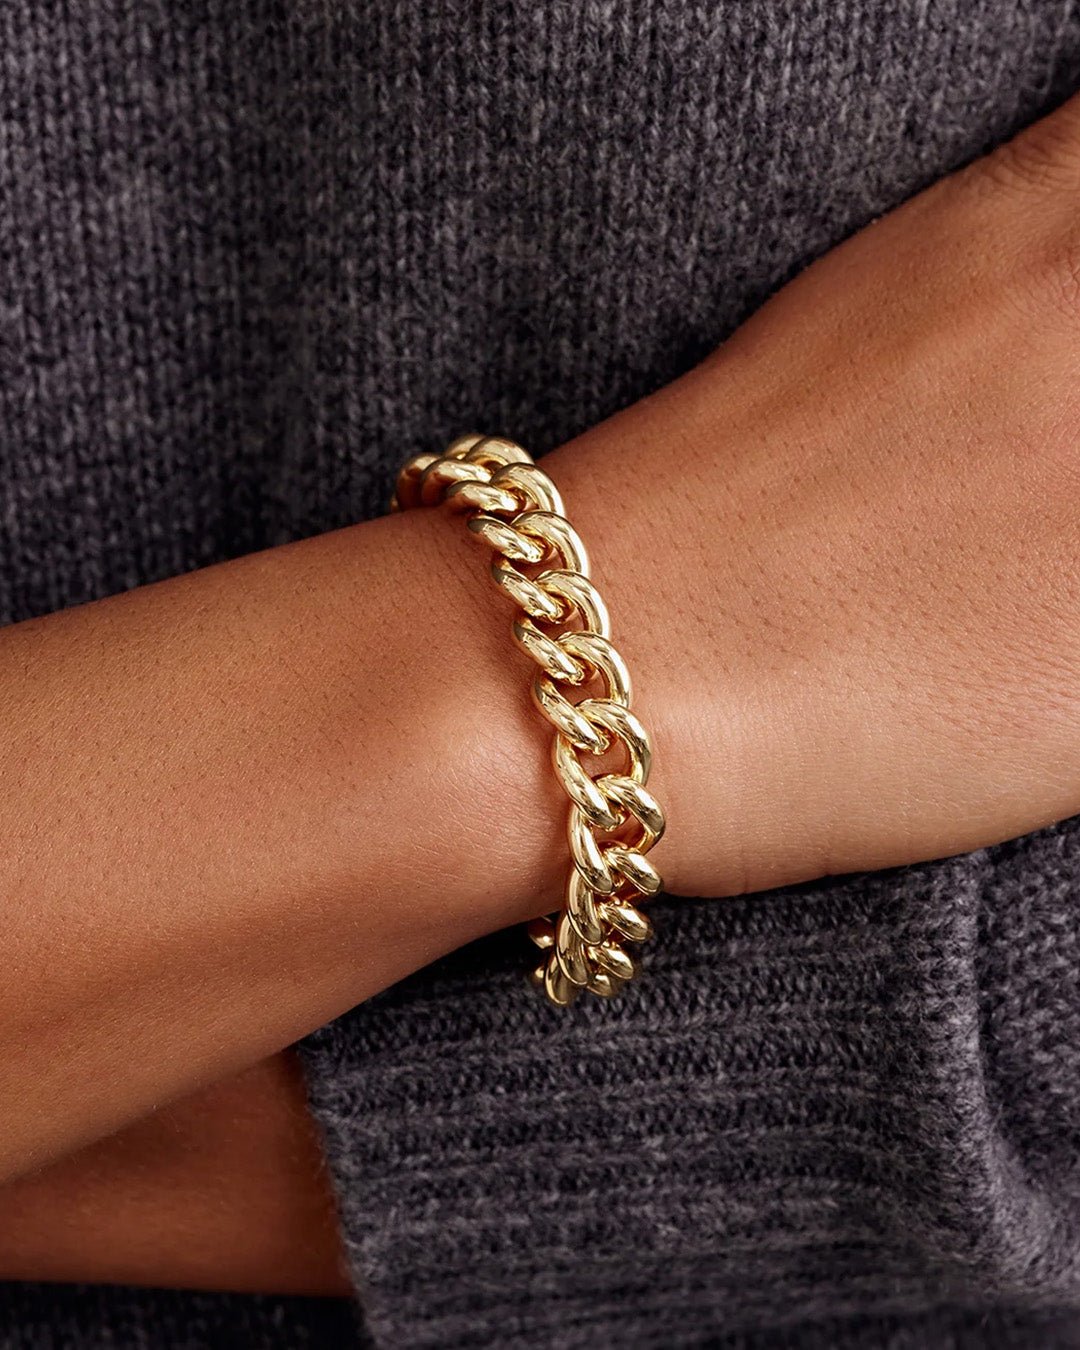 Gold | gorjana Jewelry | Lou Link Bracelet | gold chunky chain bracelet | statement bracelet | holiday party bracelet